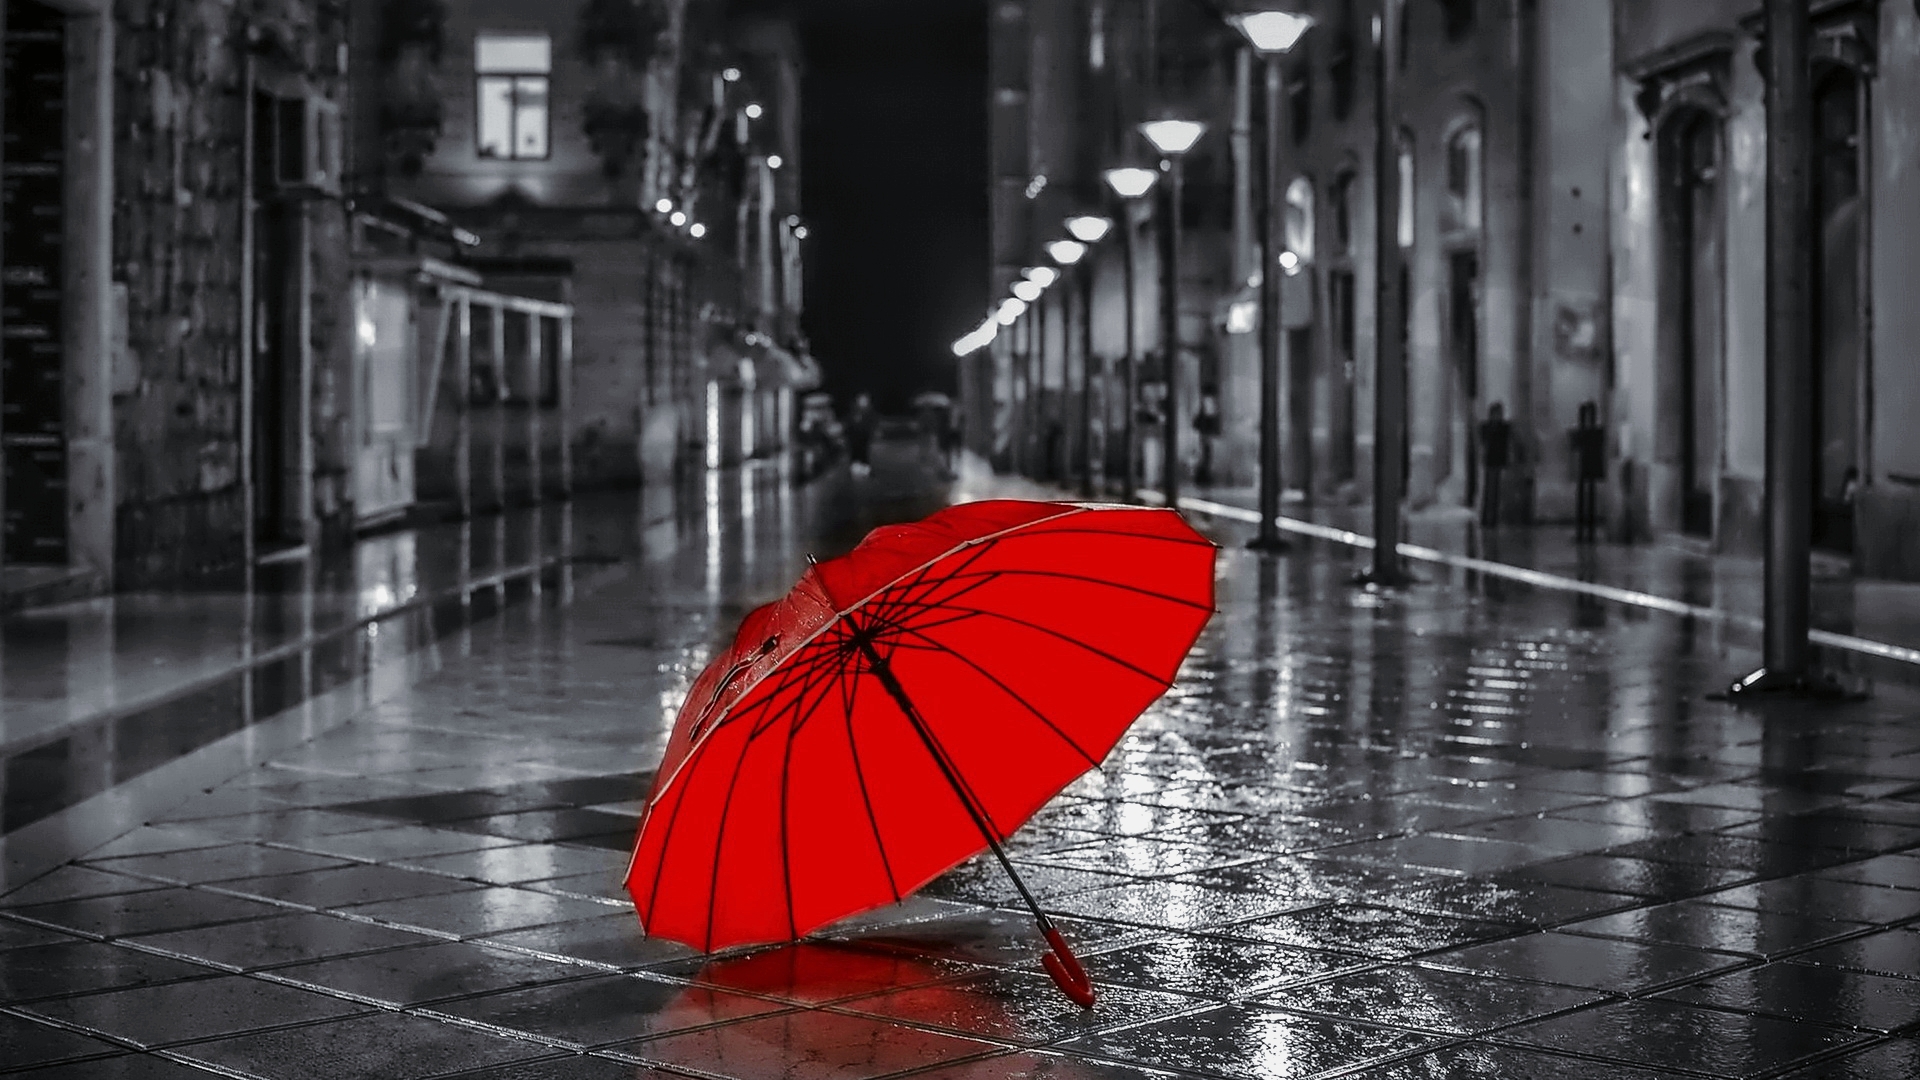 Бесплатное фото Раскрытый красный зонт лежит на улице ночного города